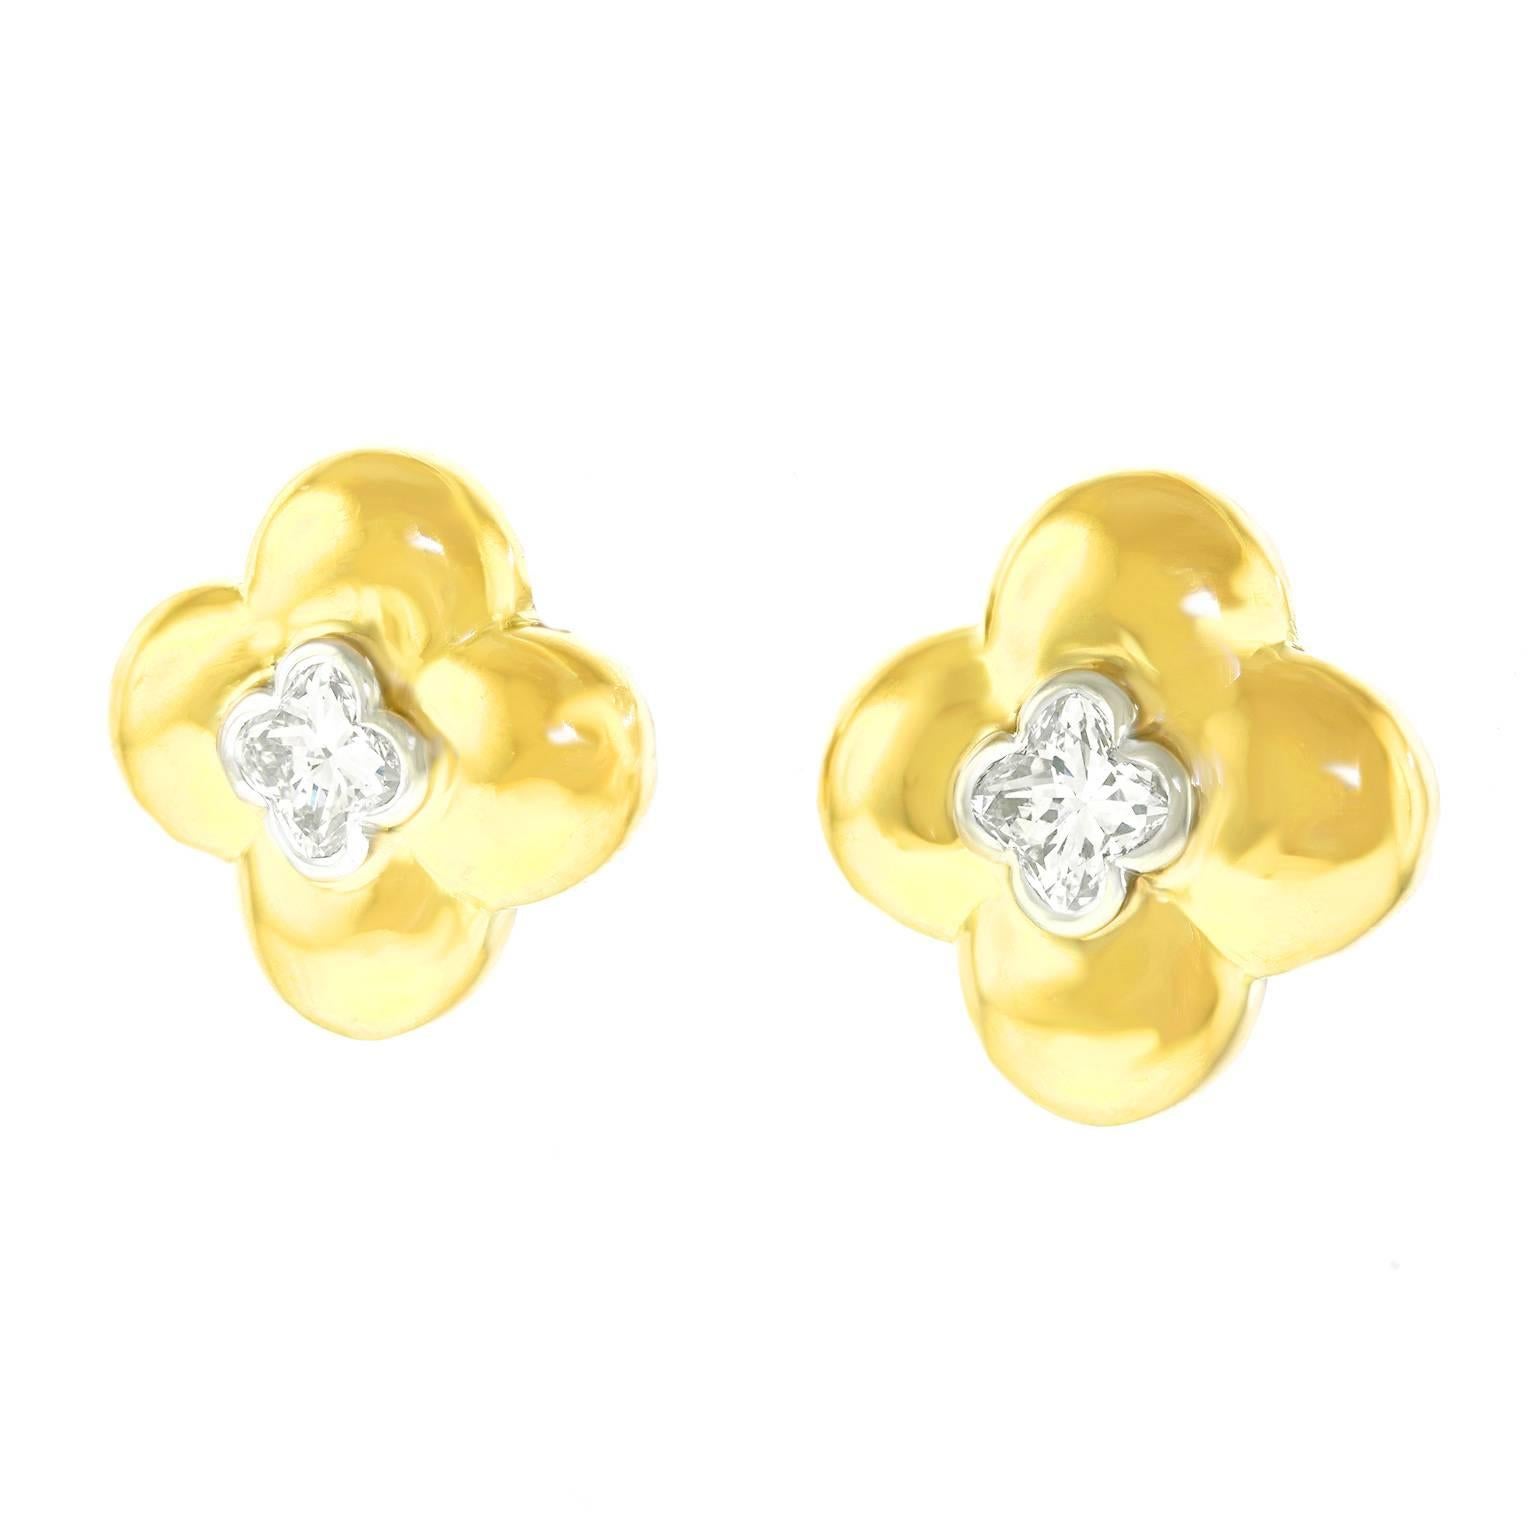 Stunning Clover-Cut Diamonds in Gold Clover Motif Earrings 3